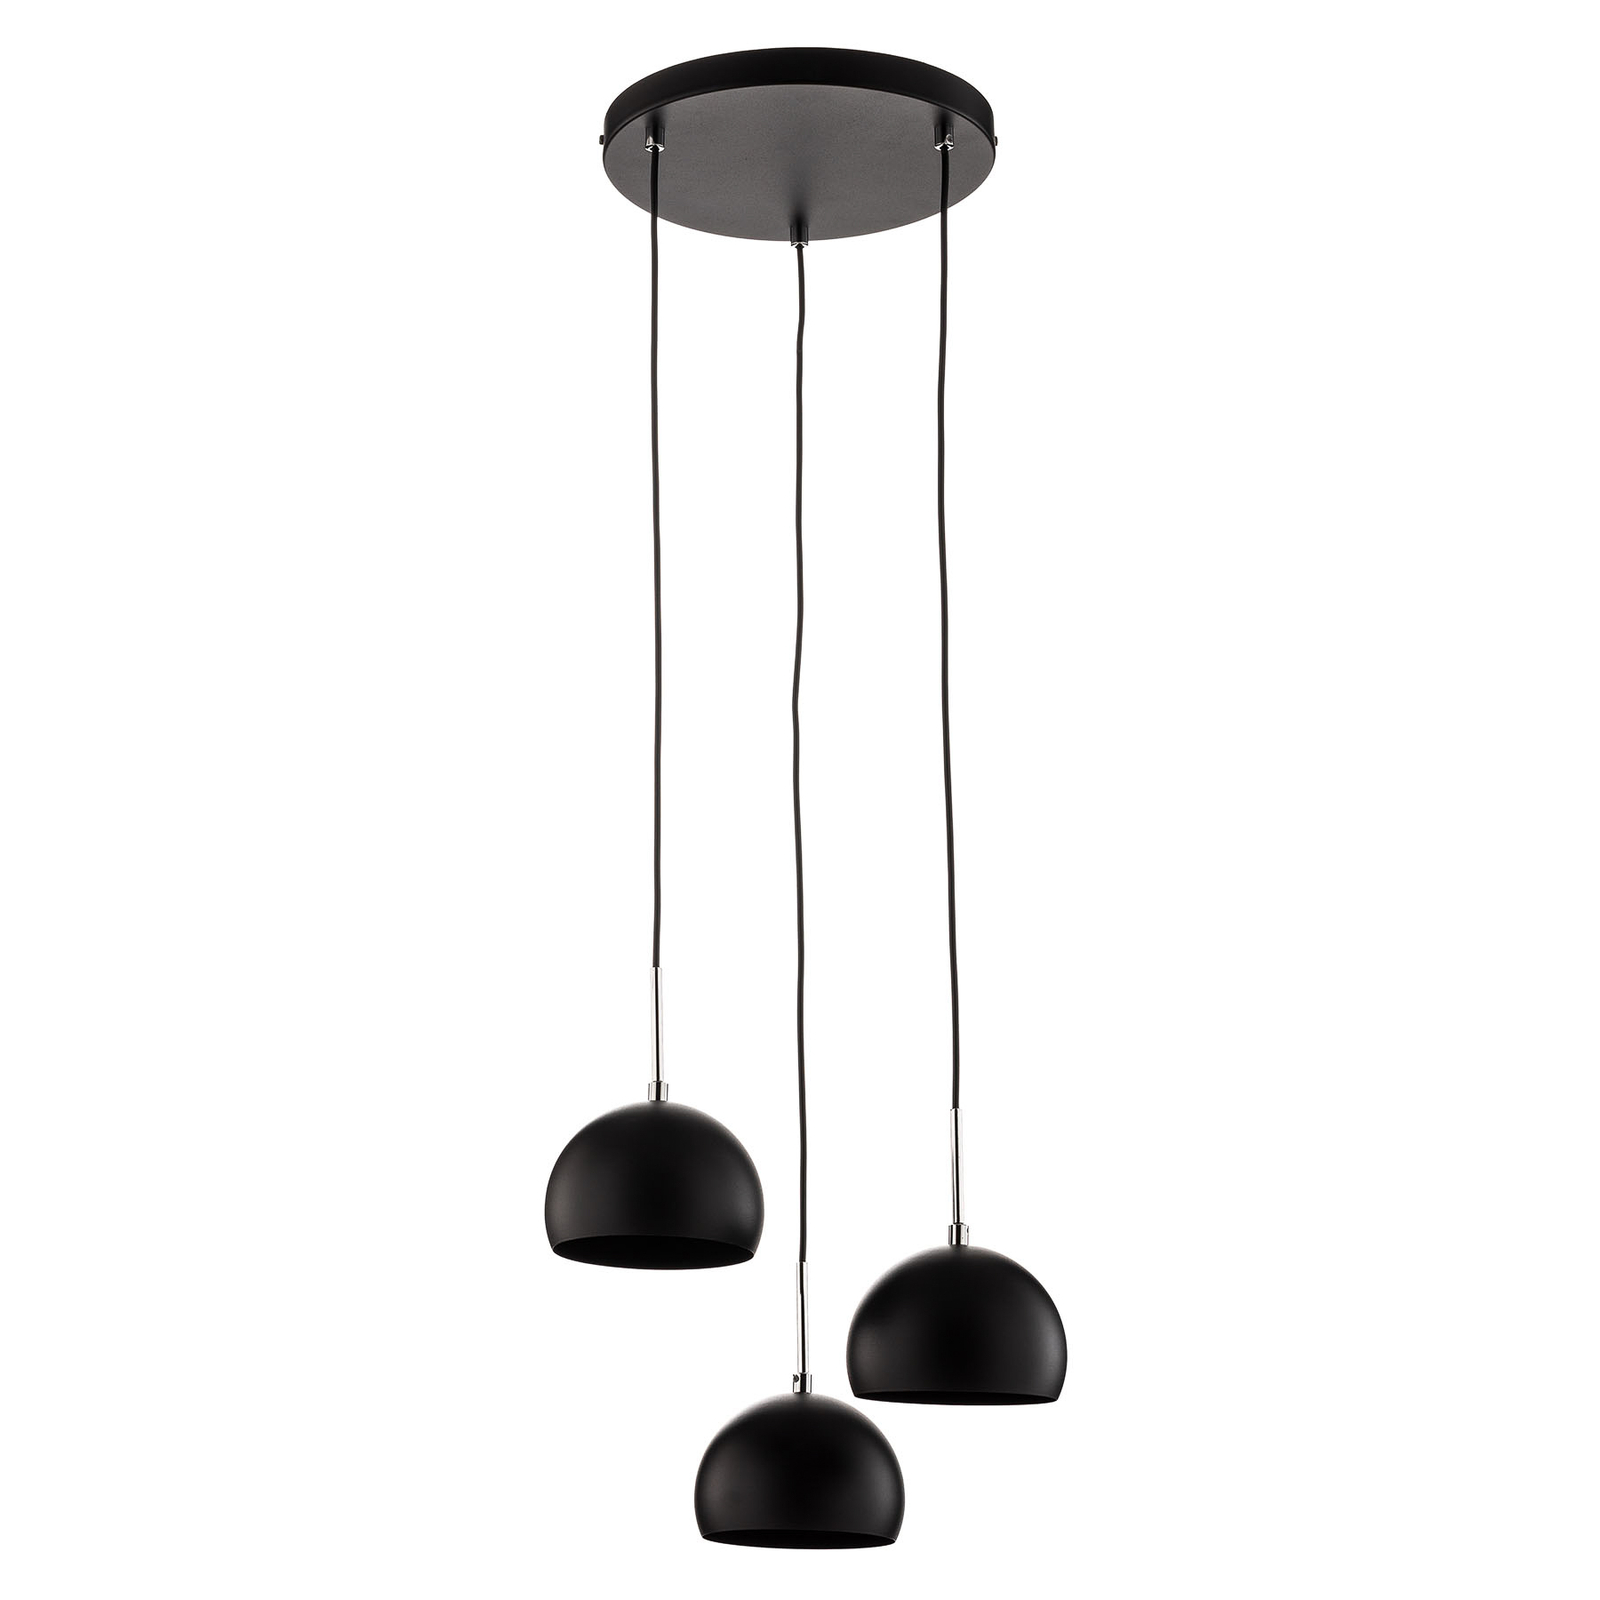 Cool-riippuvalo 3-lamppuinen, pyöreä, musta